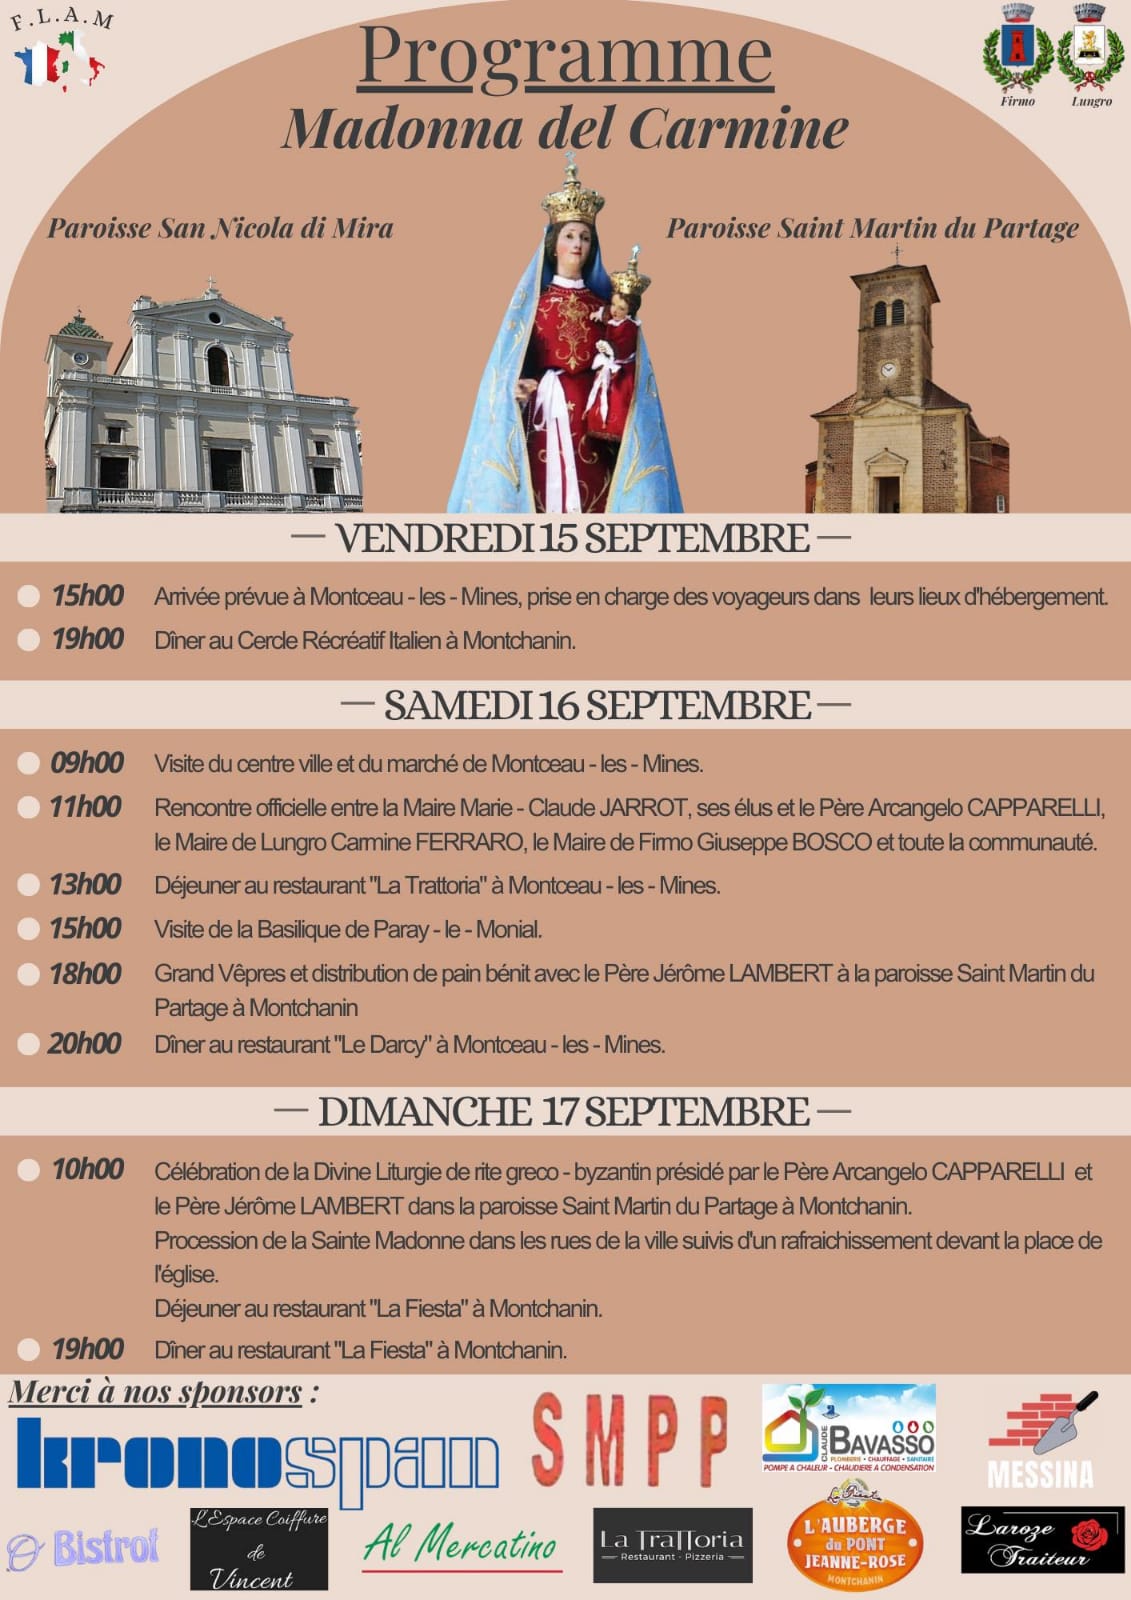 Comitato Gemellaggio “FLAM”: “La Madonna del Carmine” lascerà eccezionalmente l’Italia per l’area mineraria nel weekend del 16 e 17 settembre – info-chalon.com